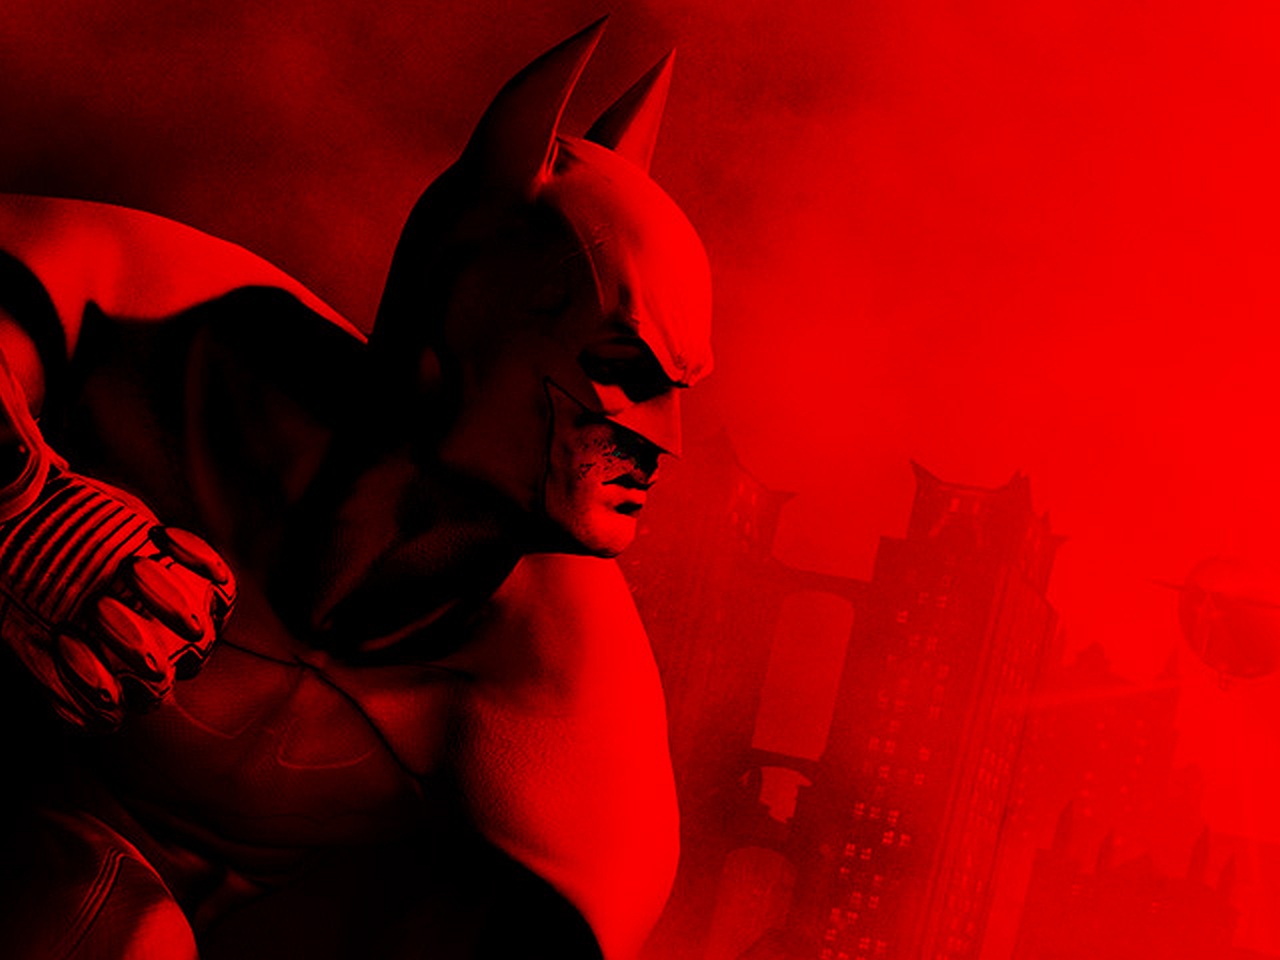 Скачать картинку Видеоигры, Batman: Аркхем Сити в телефон бесплатно.